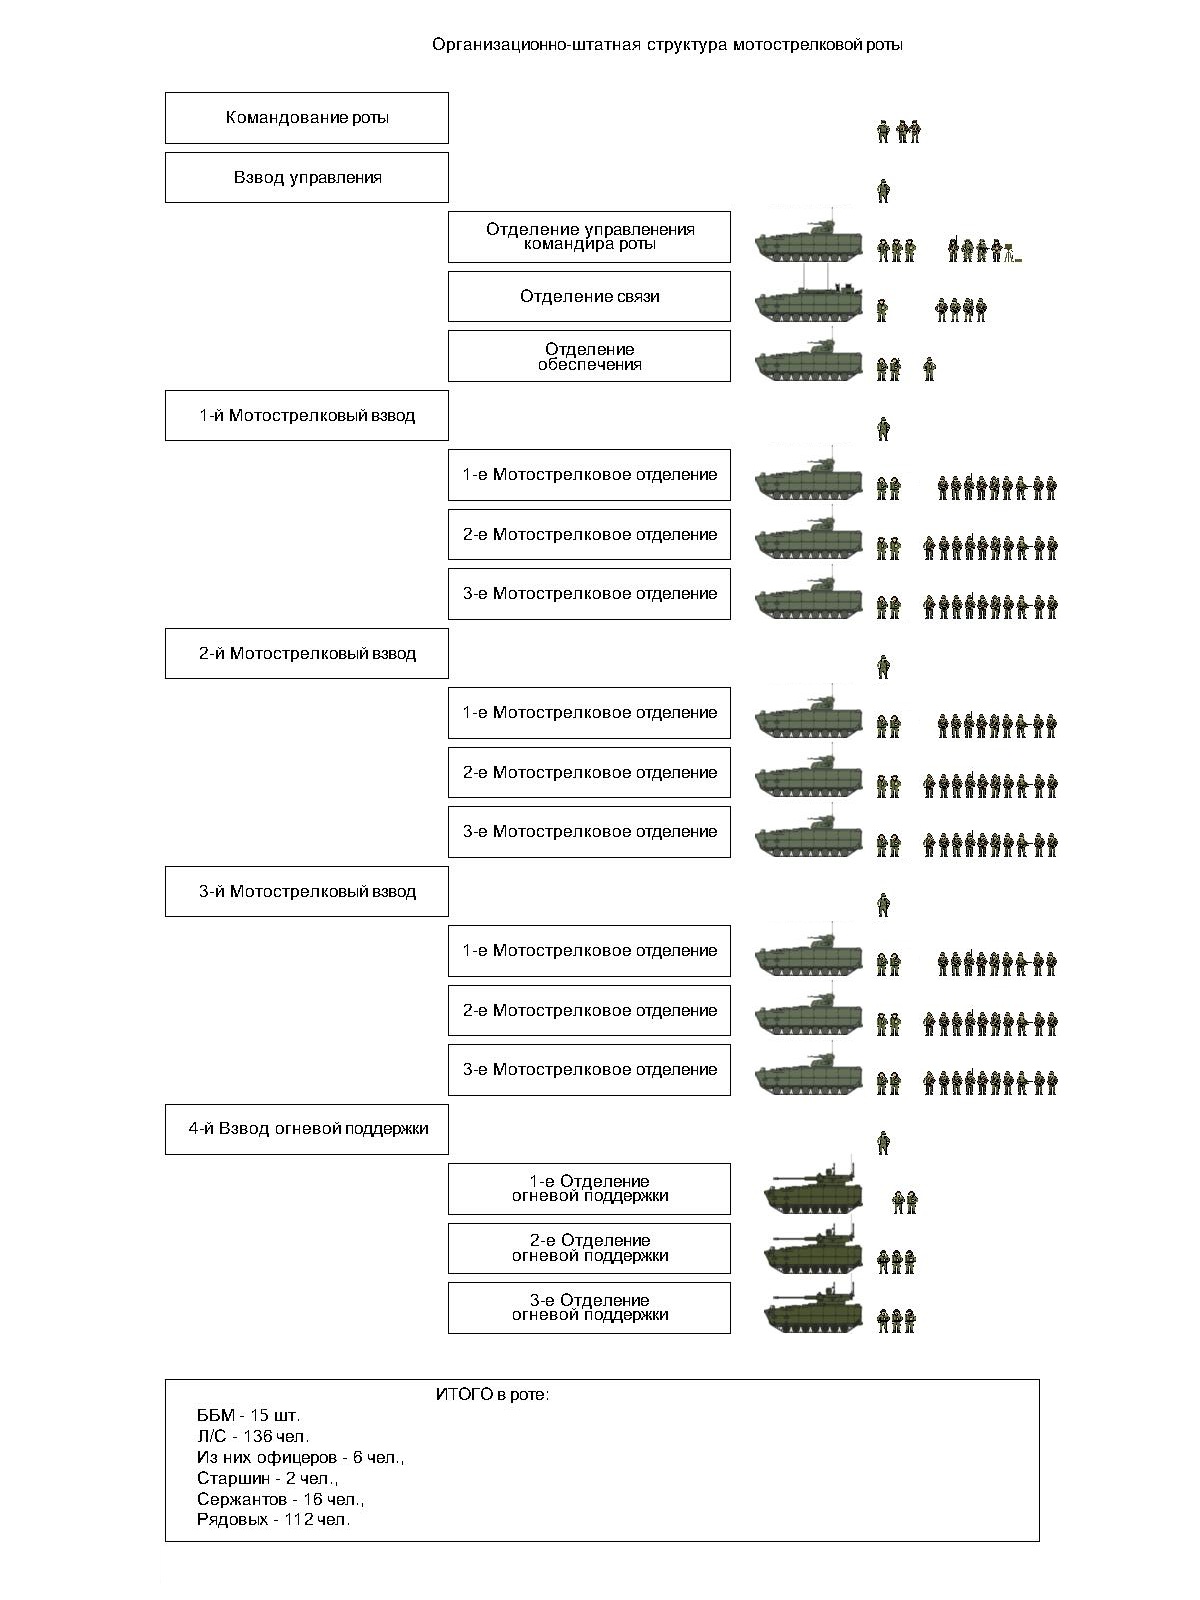 Организационно-штатная структура бригады морской пехоты РФ